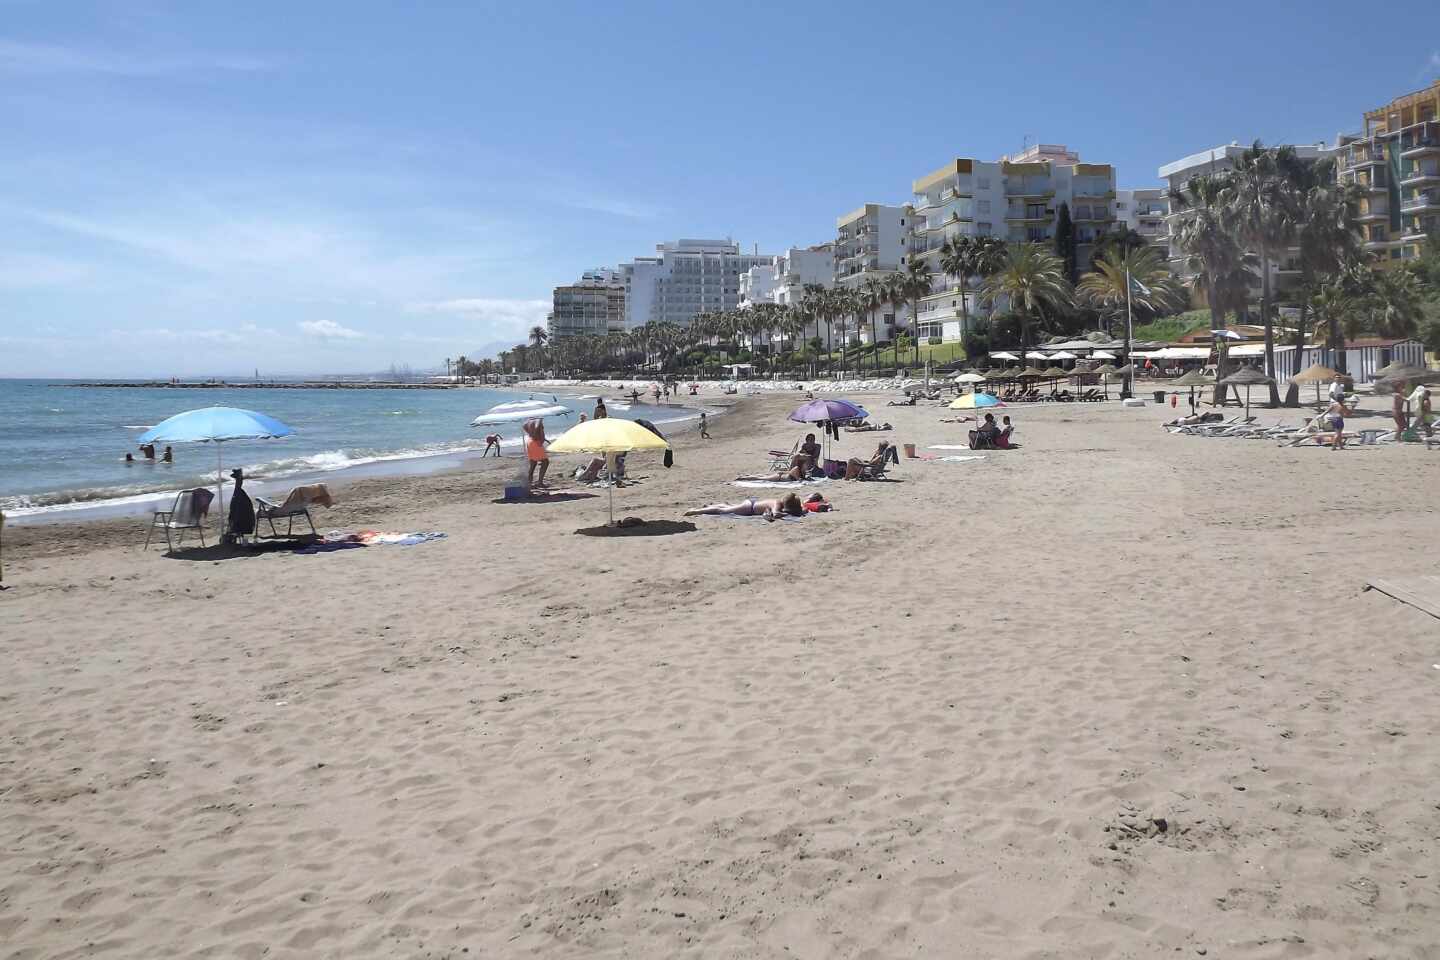 Marbella abre las playas este domingo para los niños